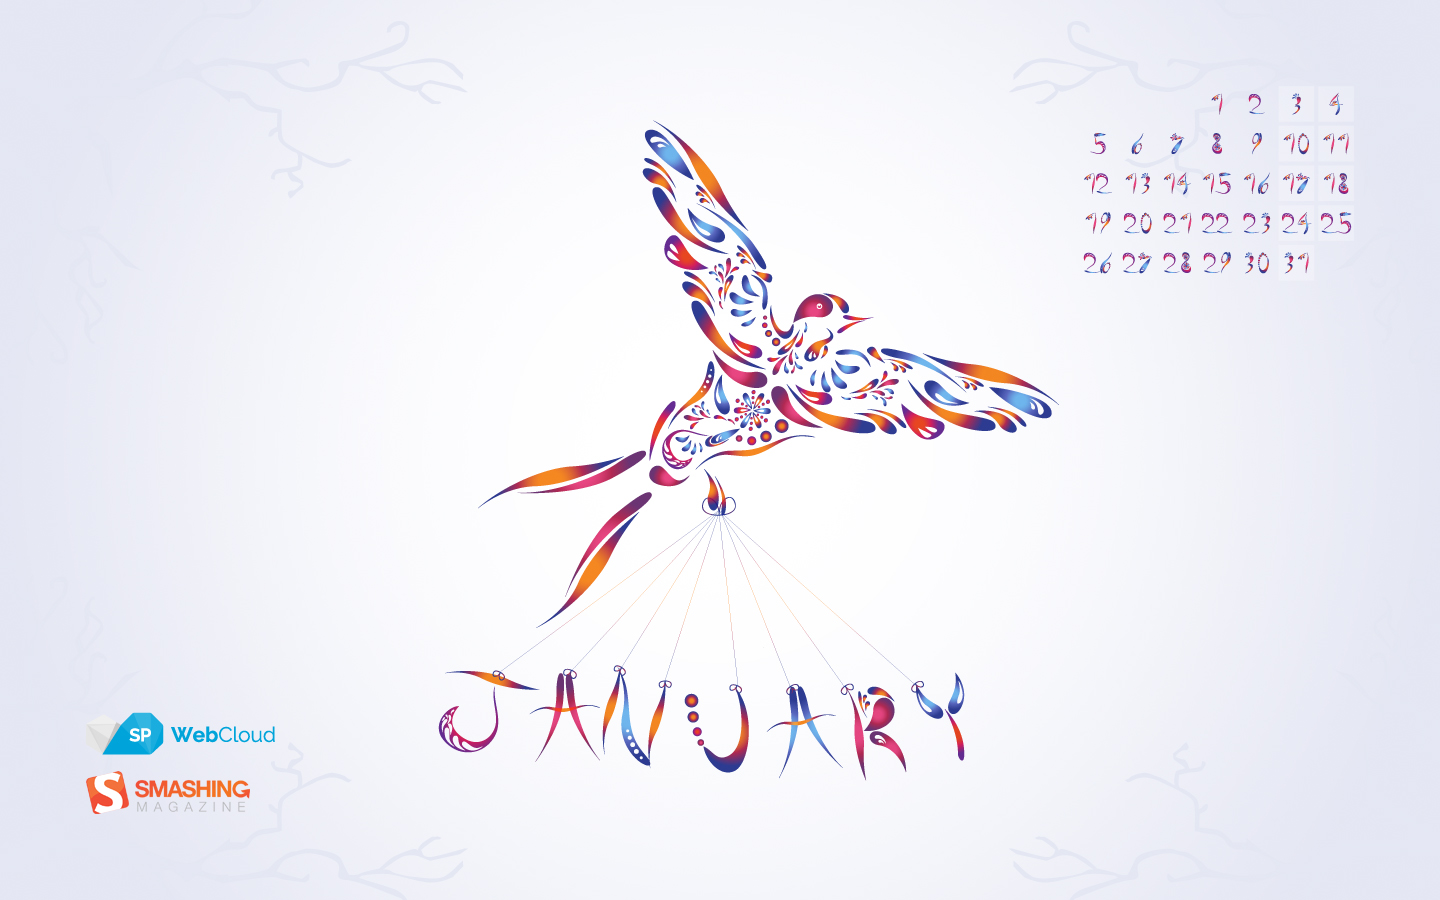 Wallpapers con calendario Enero 2015